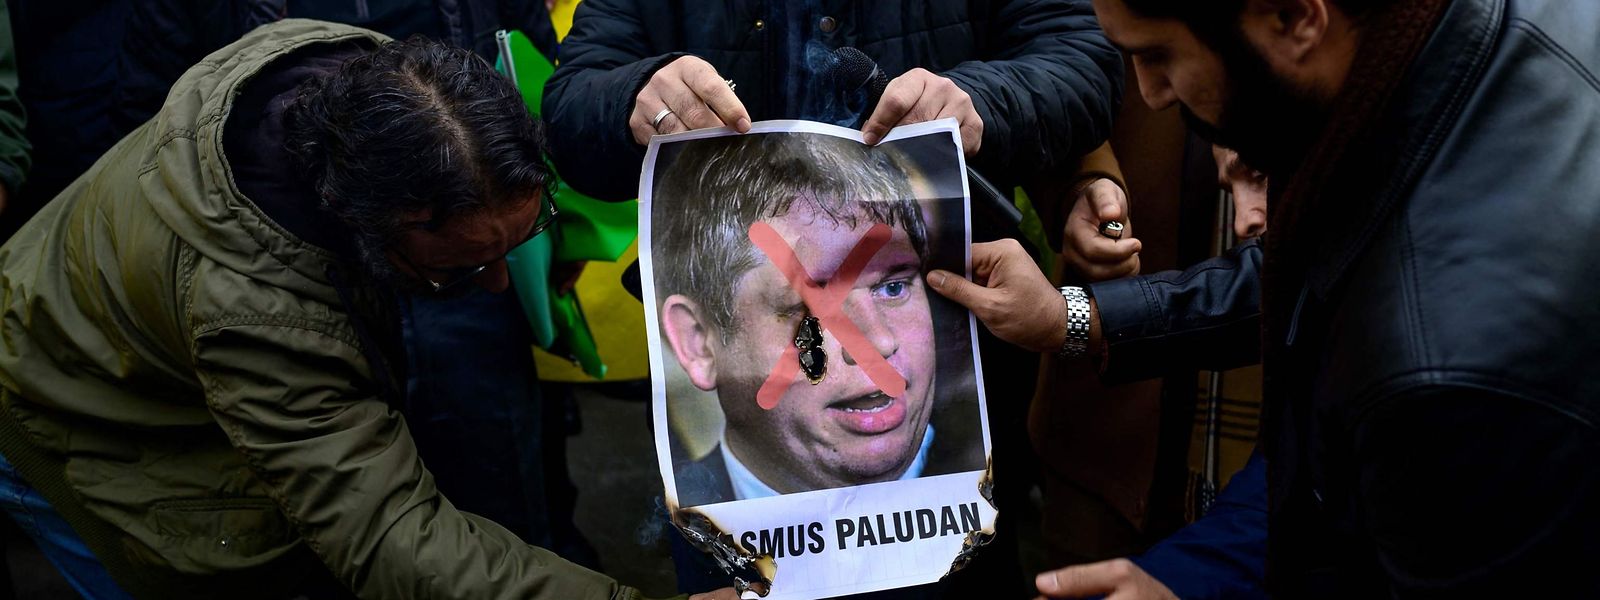 Vor dem schwedischen Generalkonsulat in Istanbul verbrennen Protestierende ein Foto des rechtsextremen schwedischen Aktivisten Rasmus Paludan.